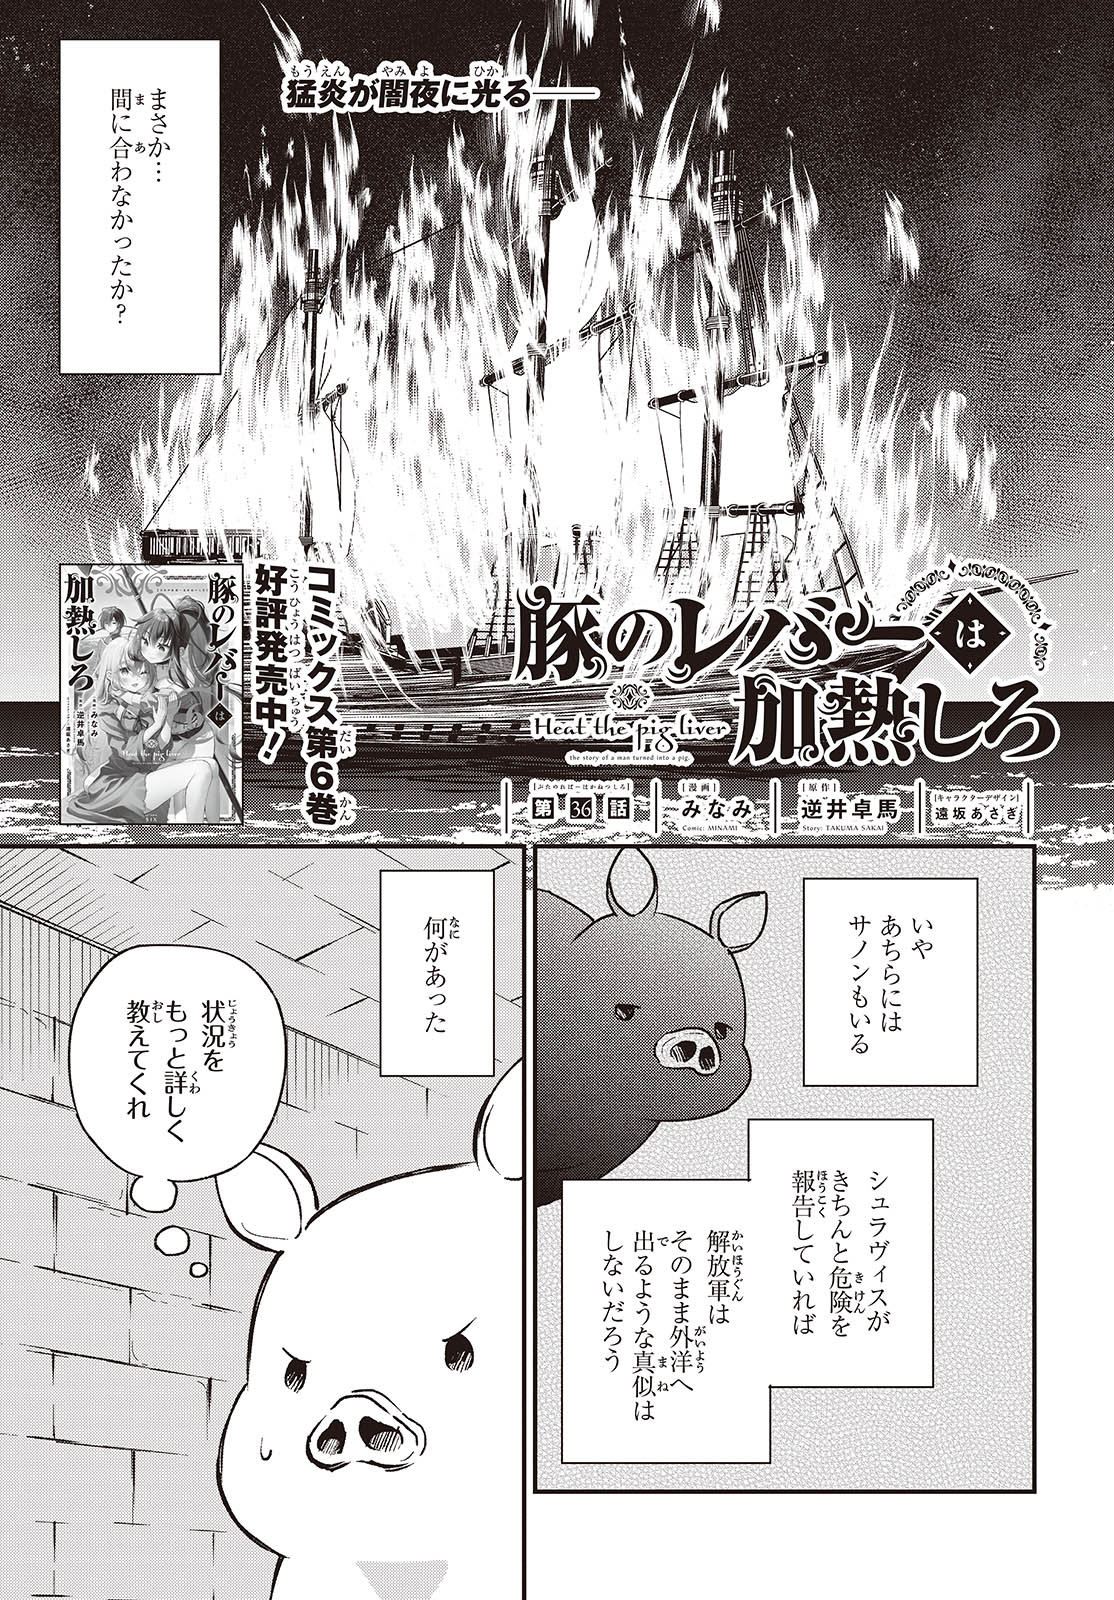 Buta no Reba wa Kanetsu Shiro - Chapter 36 - Page 1